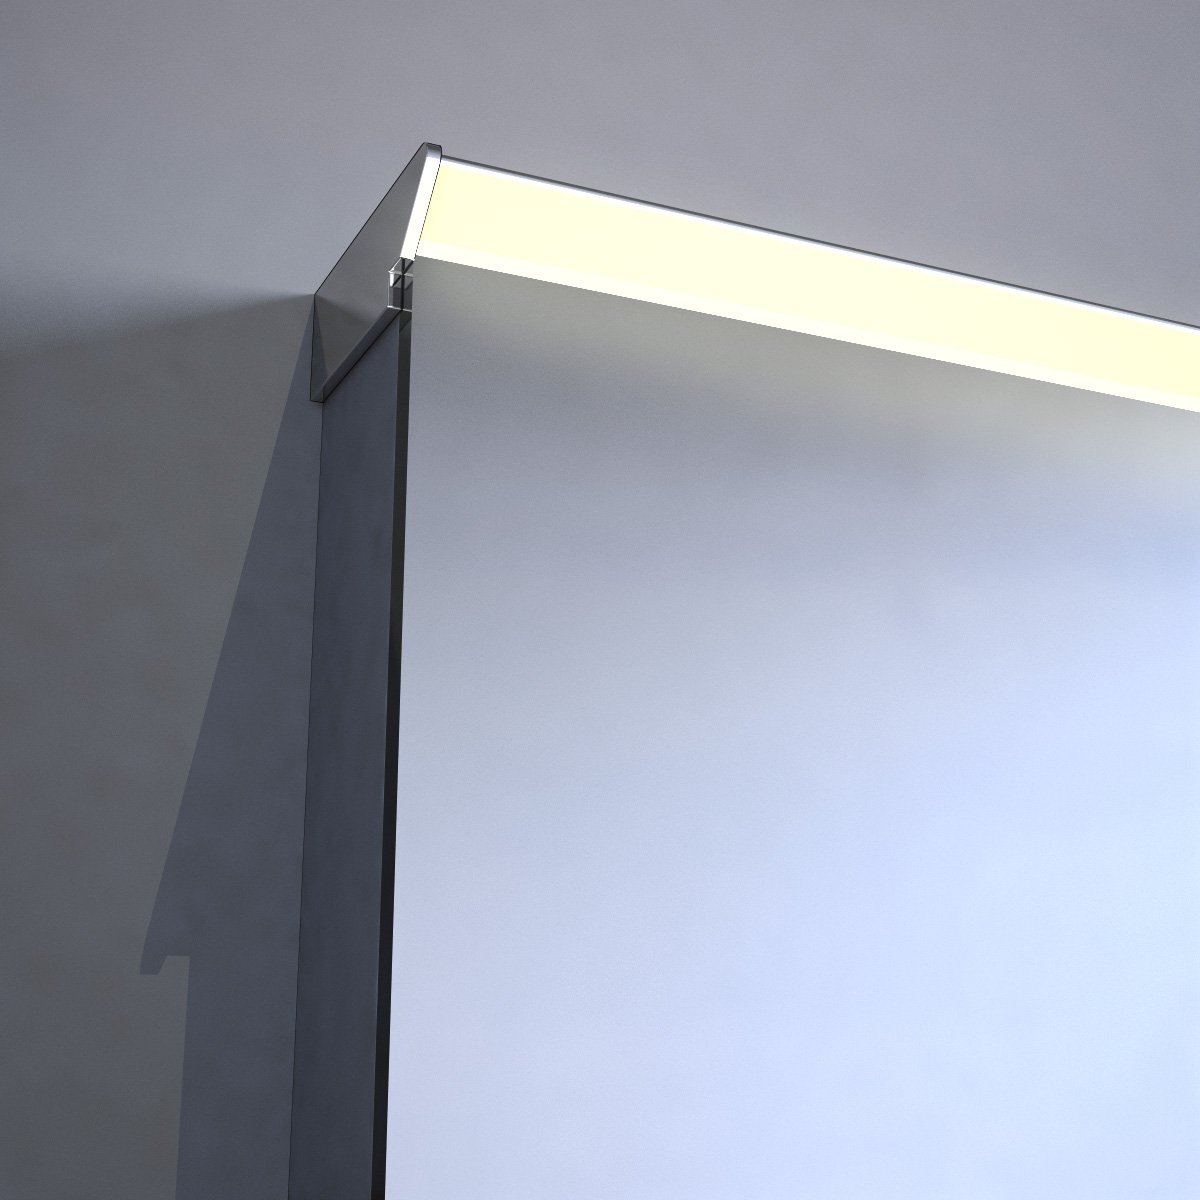 LED spiegel met directe verlichting (dimbaar) bovenin